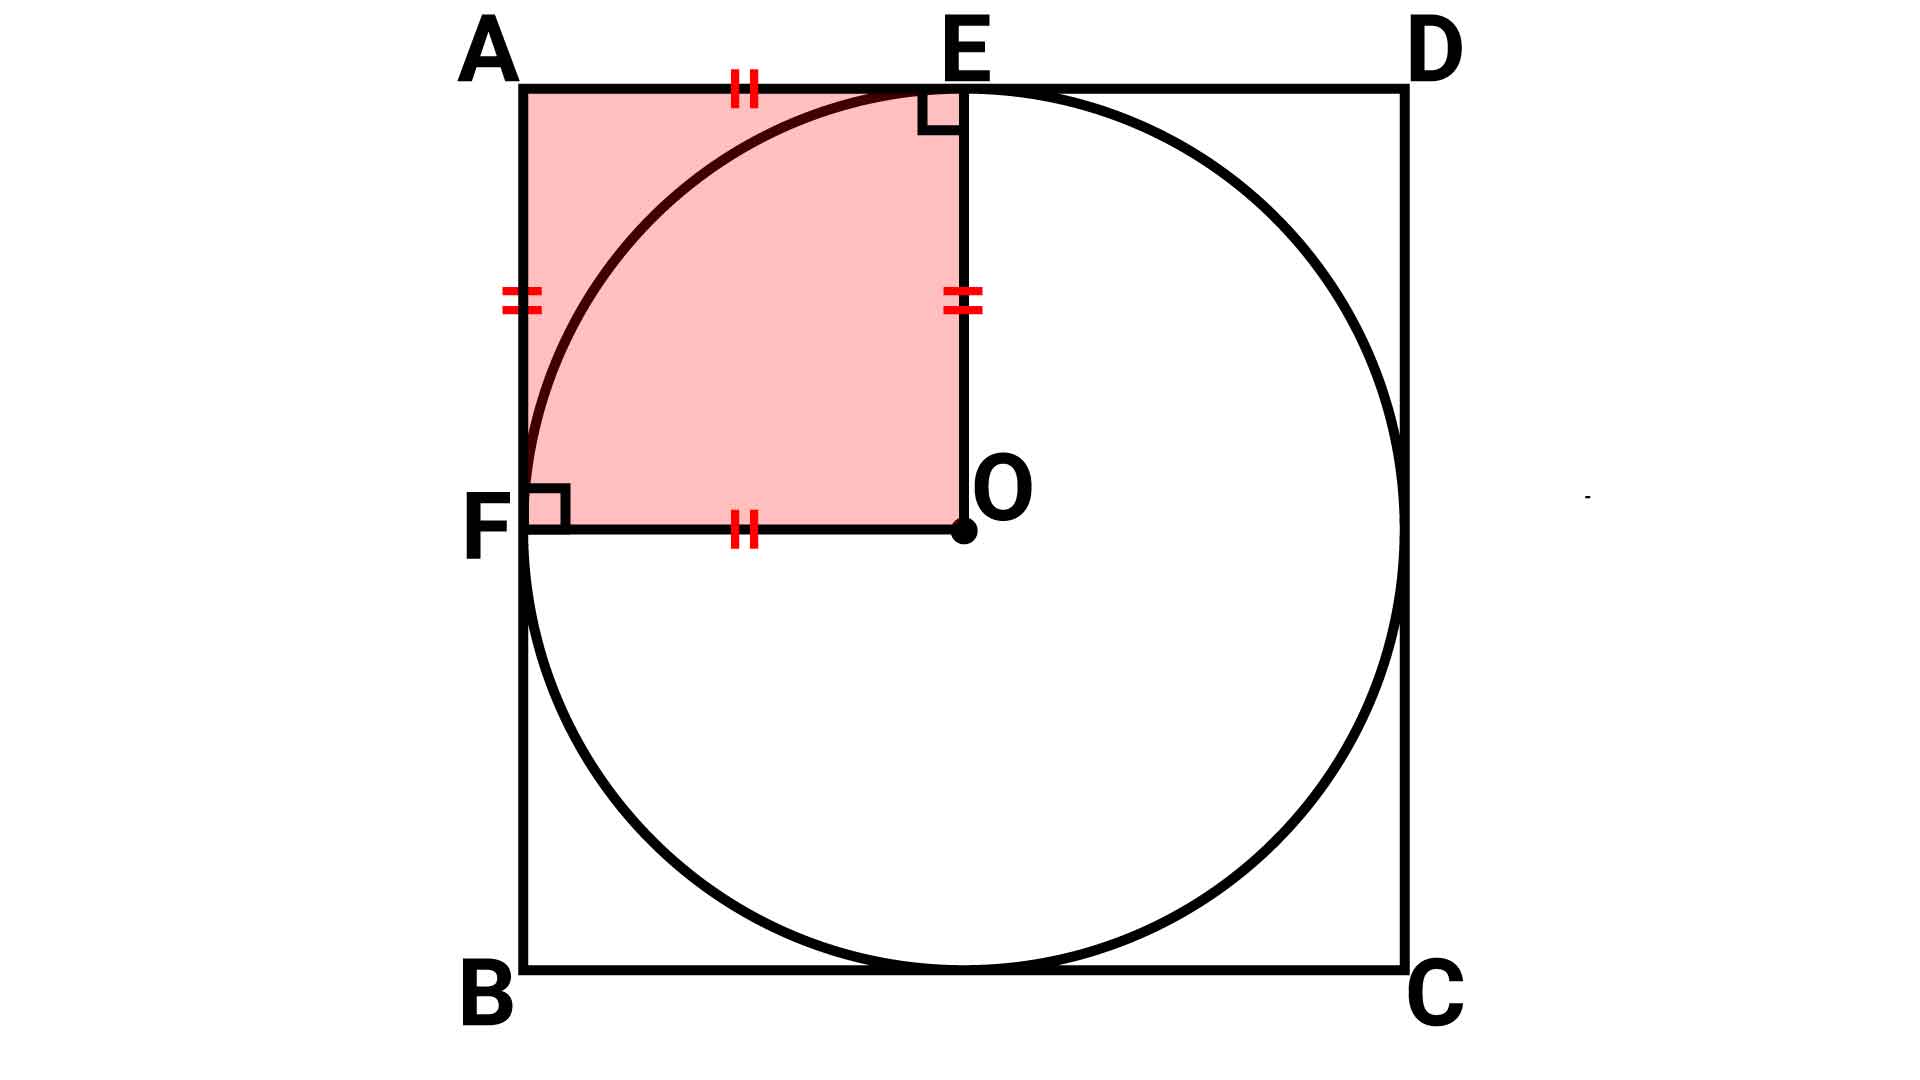 小学6年生の知識で解ける 円の面積 の問題 あなたは解けますか